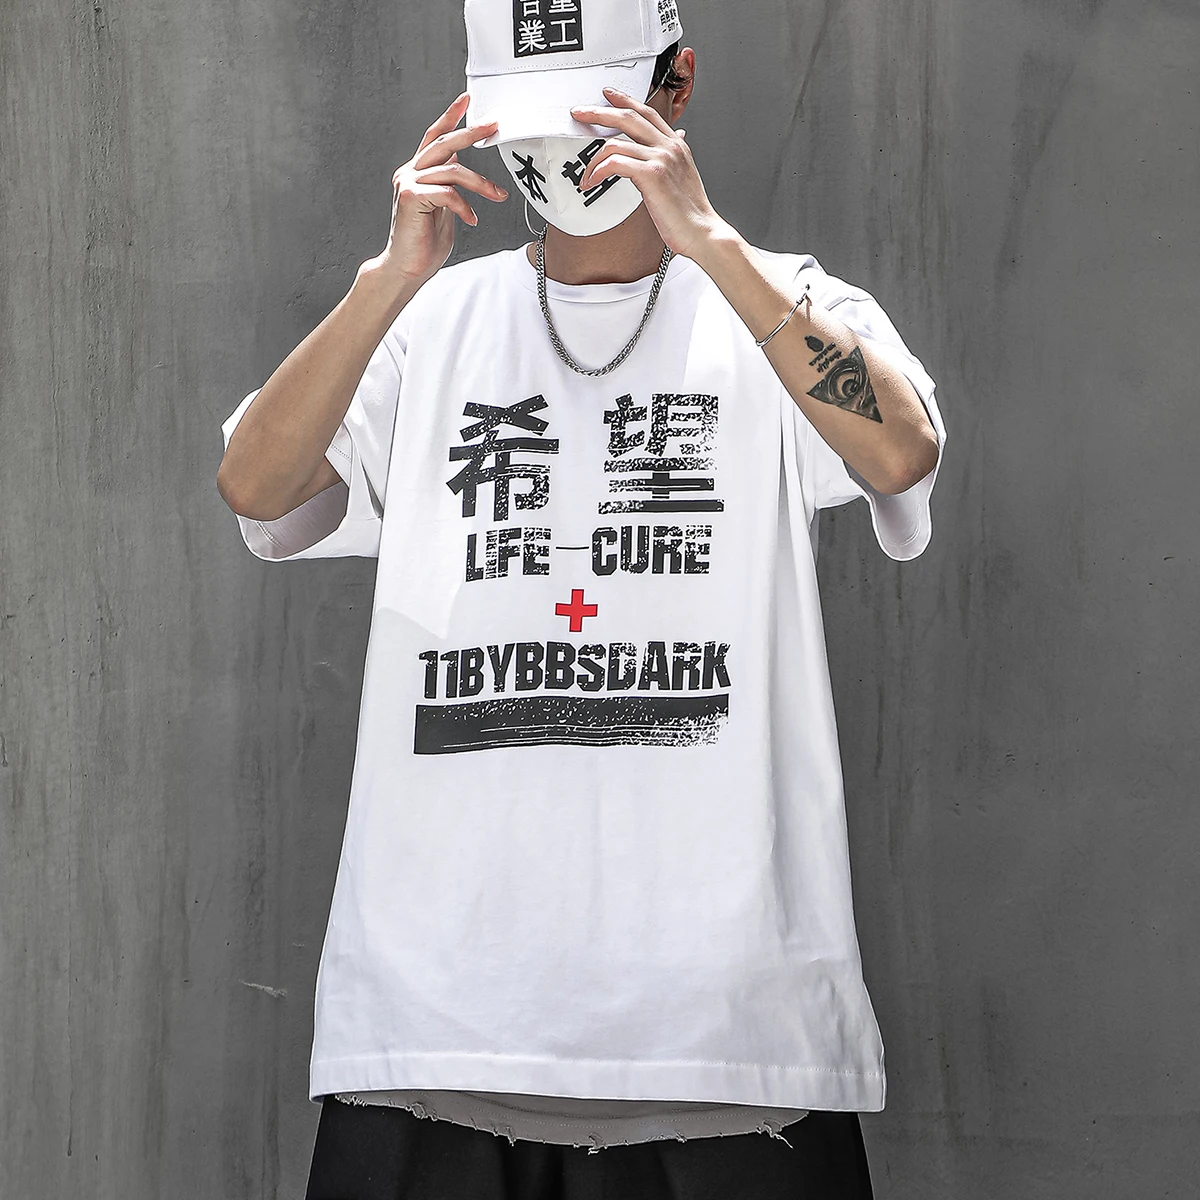 

Retro Hope Printed Harajuku Tshirts 2021SS Summer Cotton Loose Short Sleeve Shirts Streetwear Hip Hop T-Shirt Men